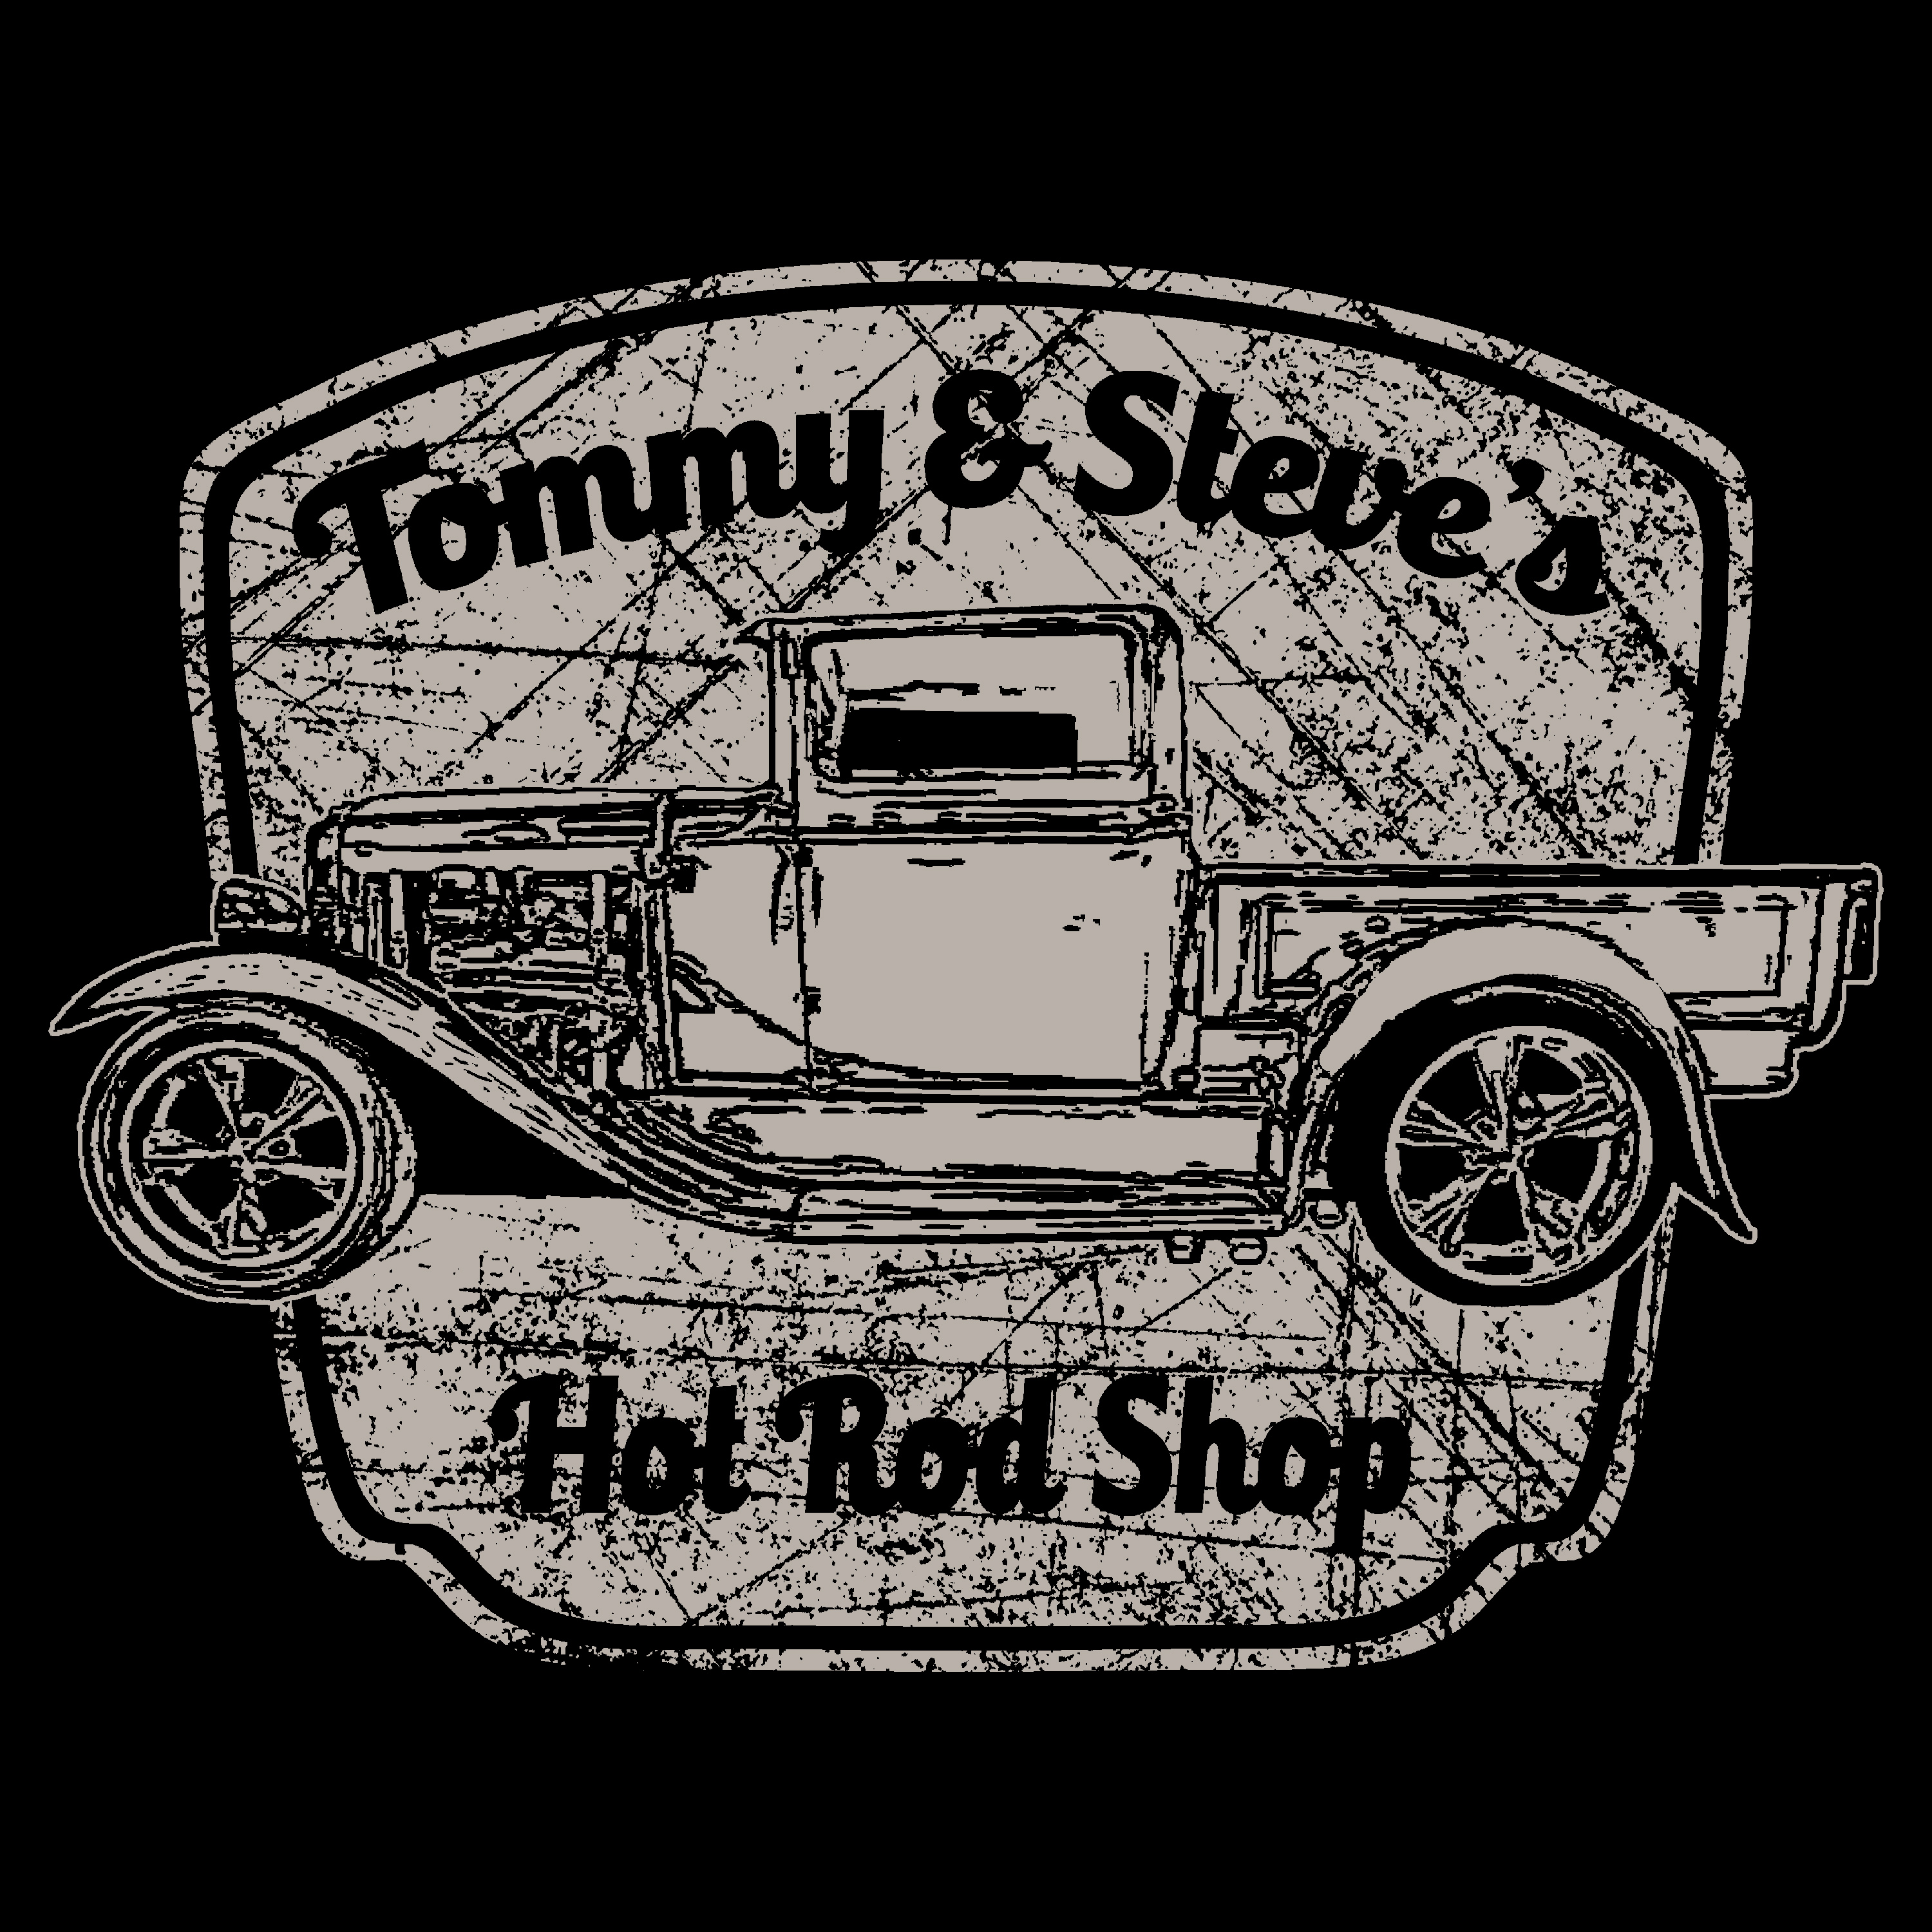 Tommy & Steve's Hot Rod Shop.jpg